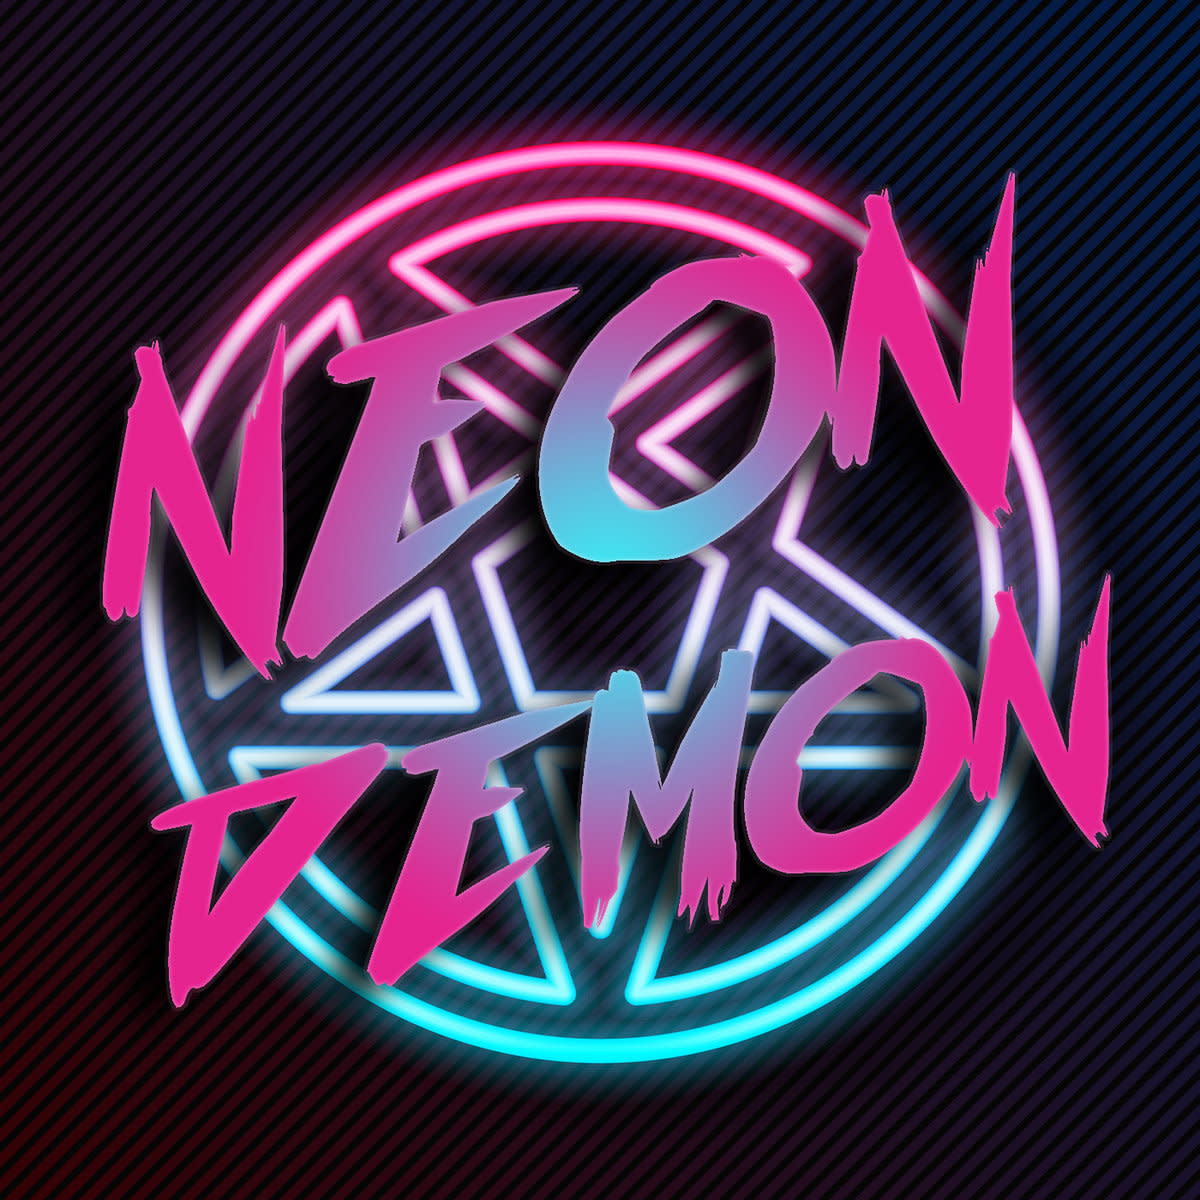 Neon Demon, "Neon Demon" EP (2022)